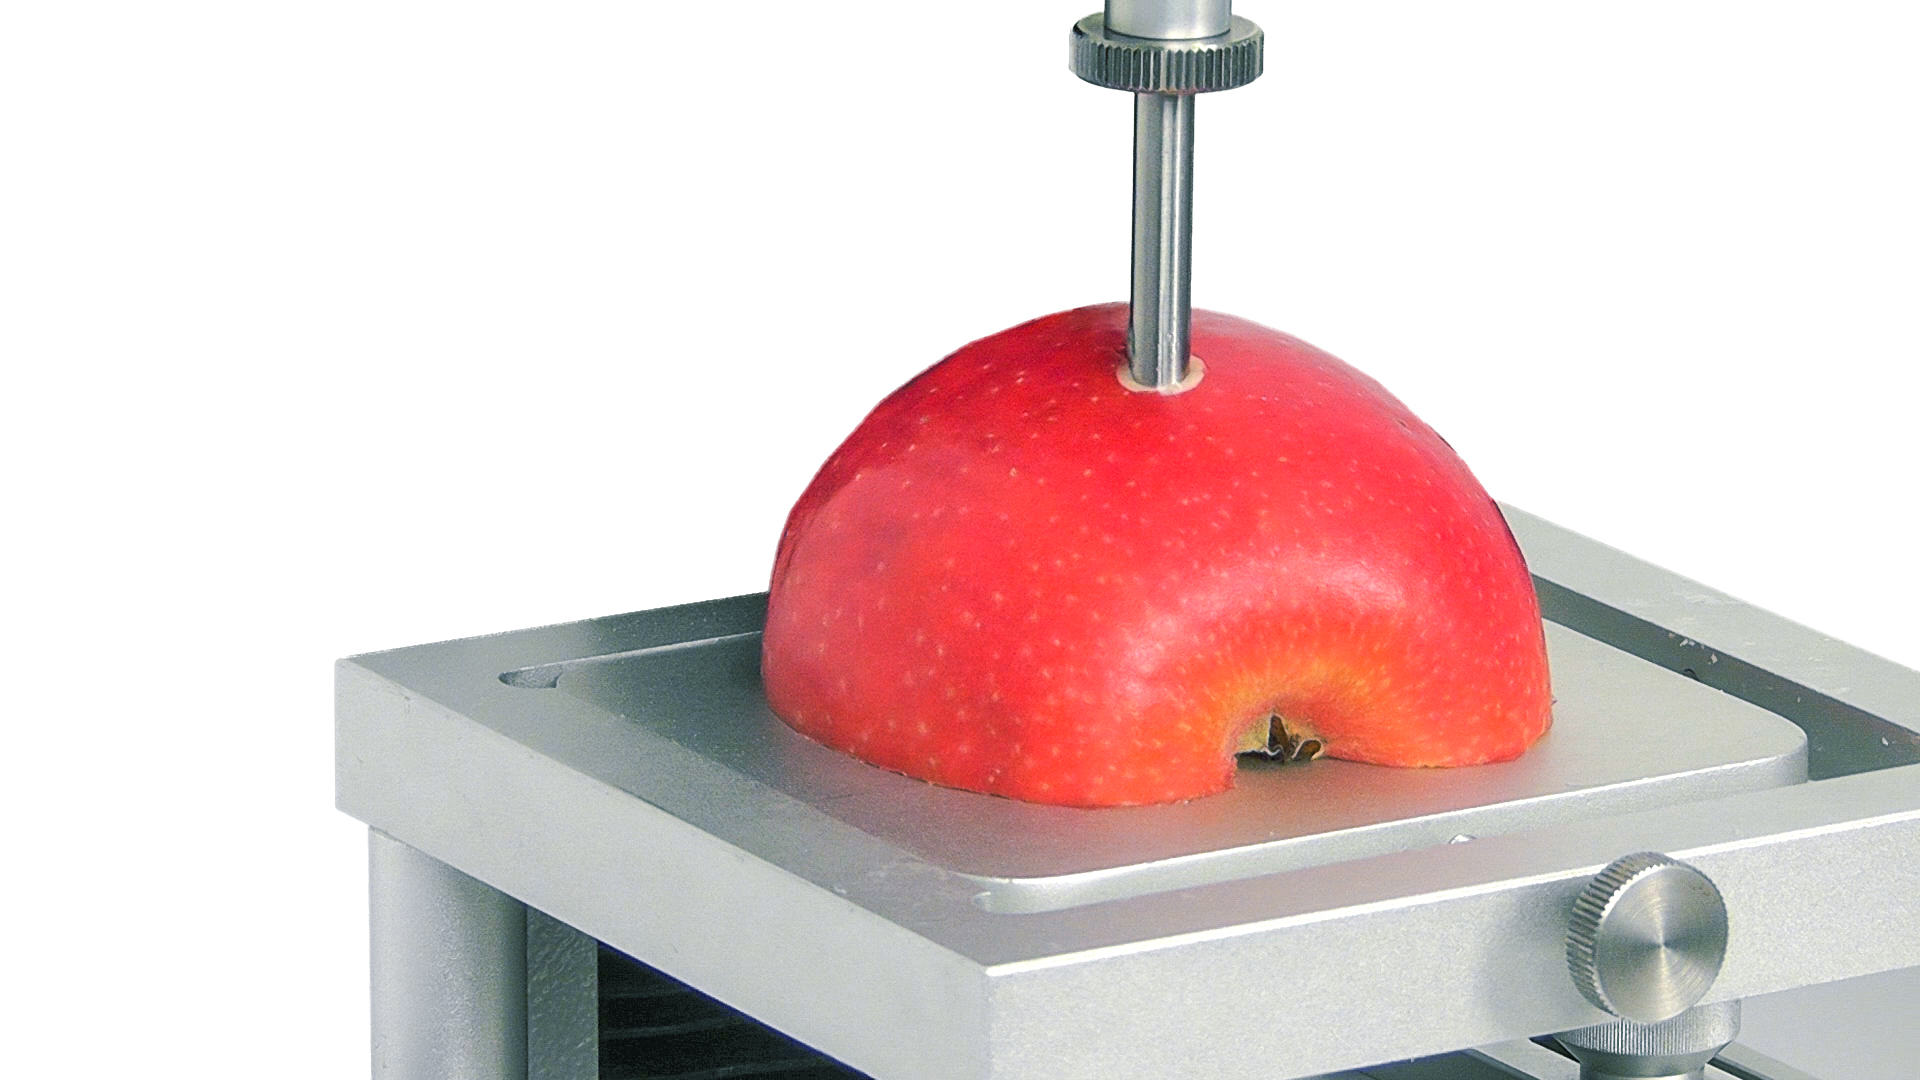 Apple penetration test for fruit ripeness